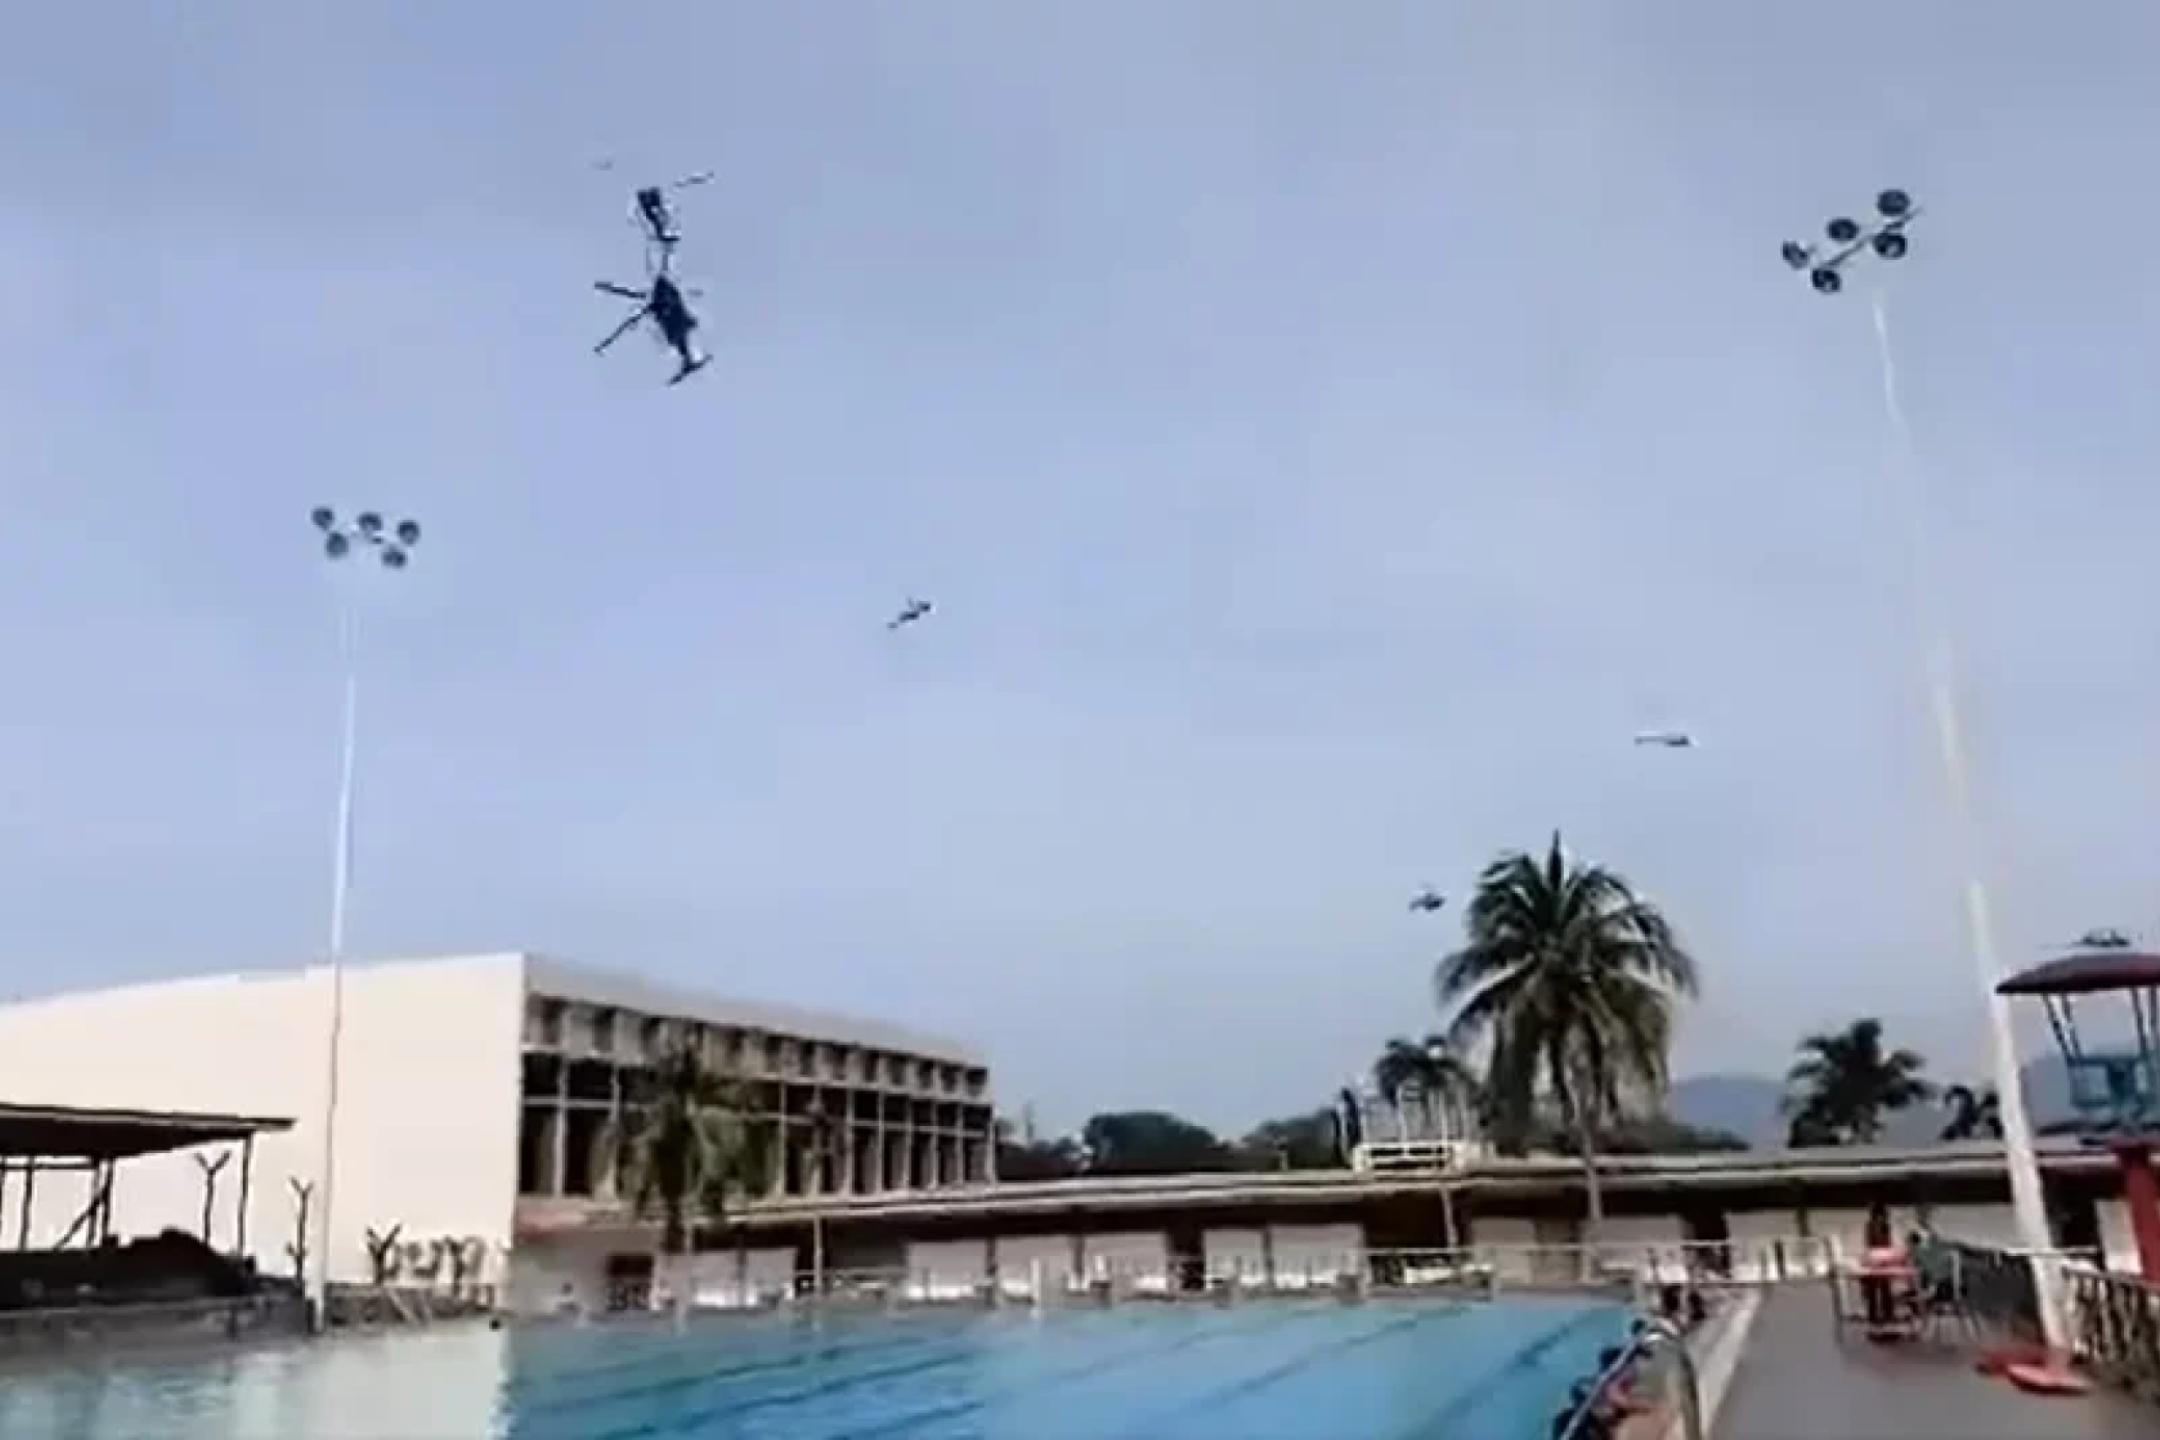 游泳偏遇坠毁直升机 碎片击伤1军人